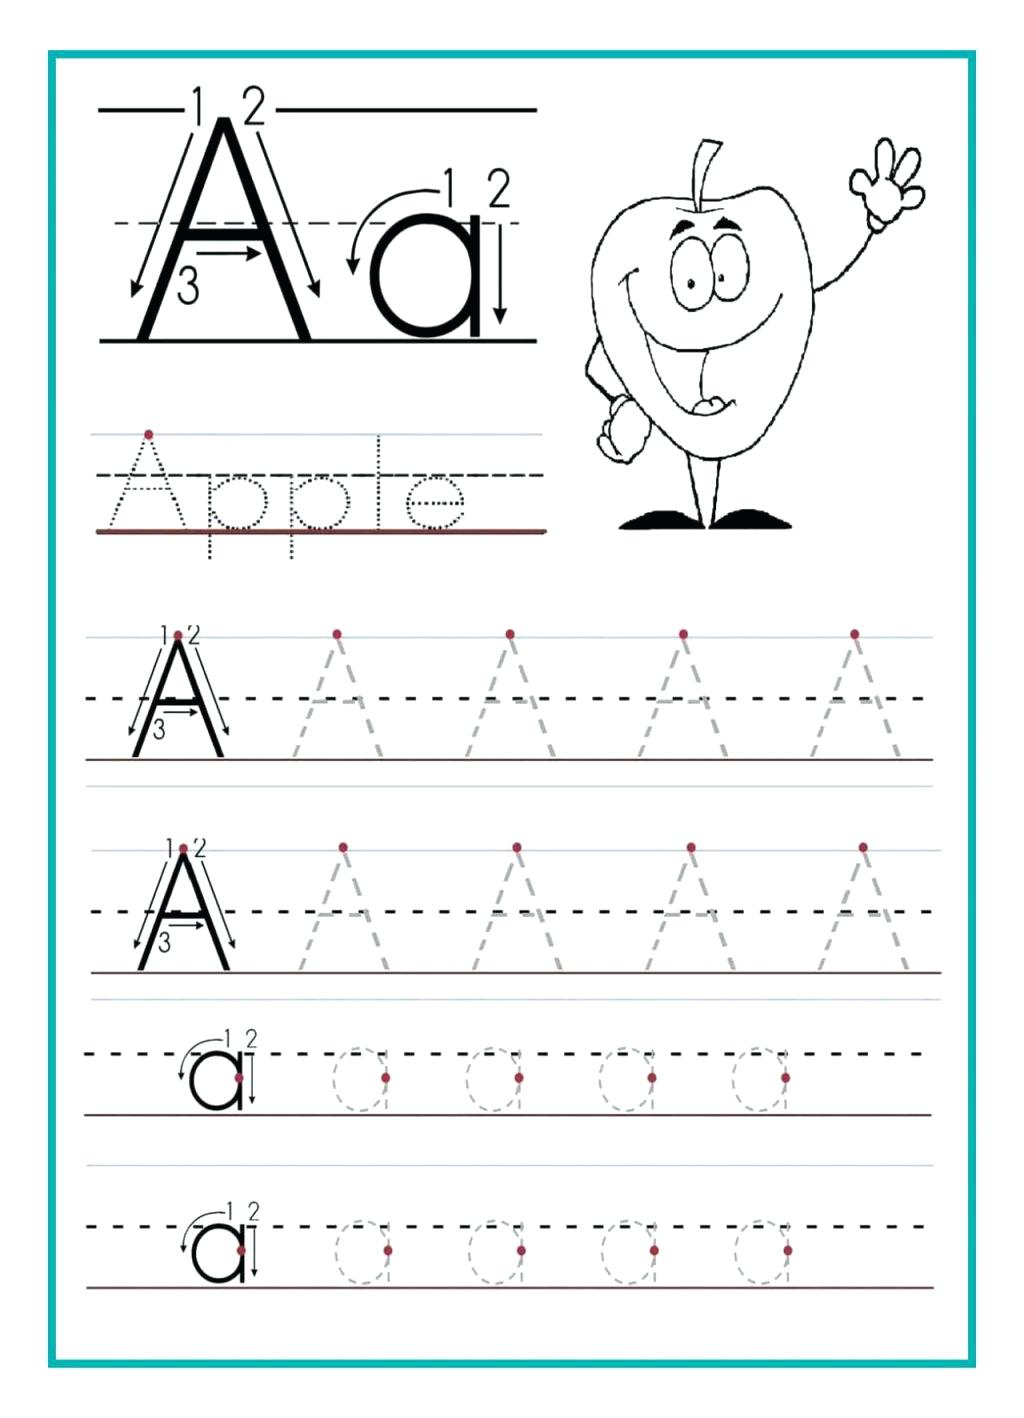 sentence-tracing-worksheets-alphabetworksheetsfreecom-abcd-tracing-worksheet